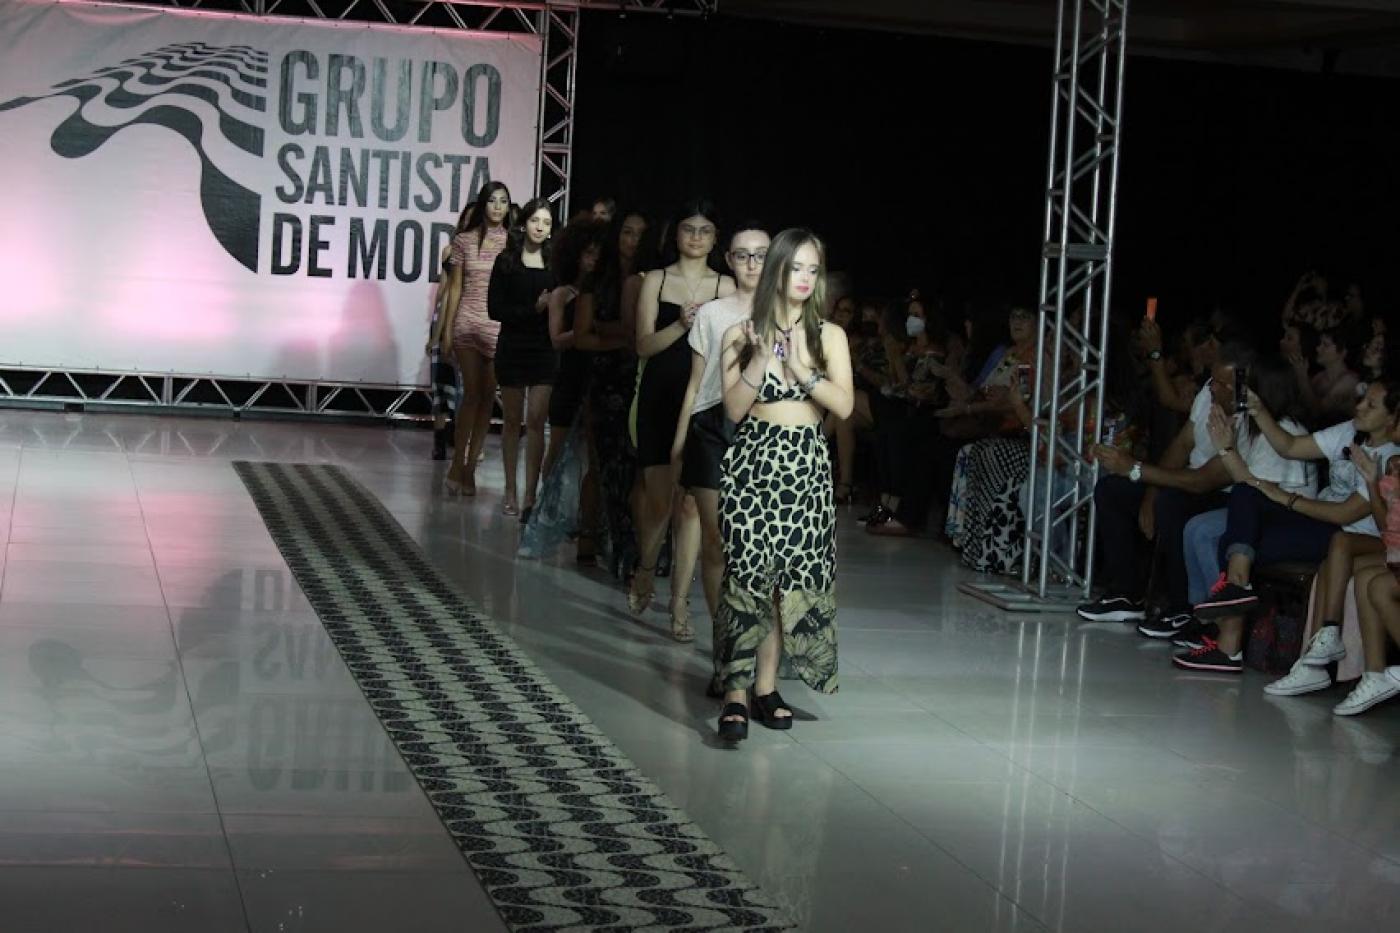 Jovens modelos femininas desfilam na passarela com letreiro ao fundo escrito Grupo Santista de Moda. #pratodosverem